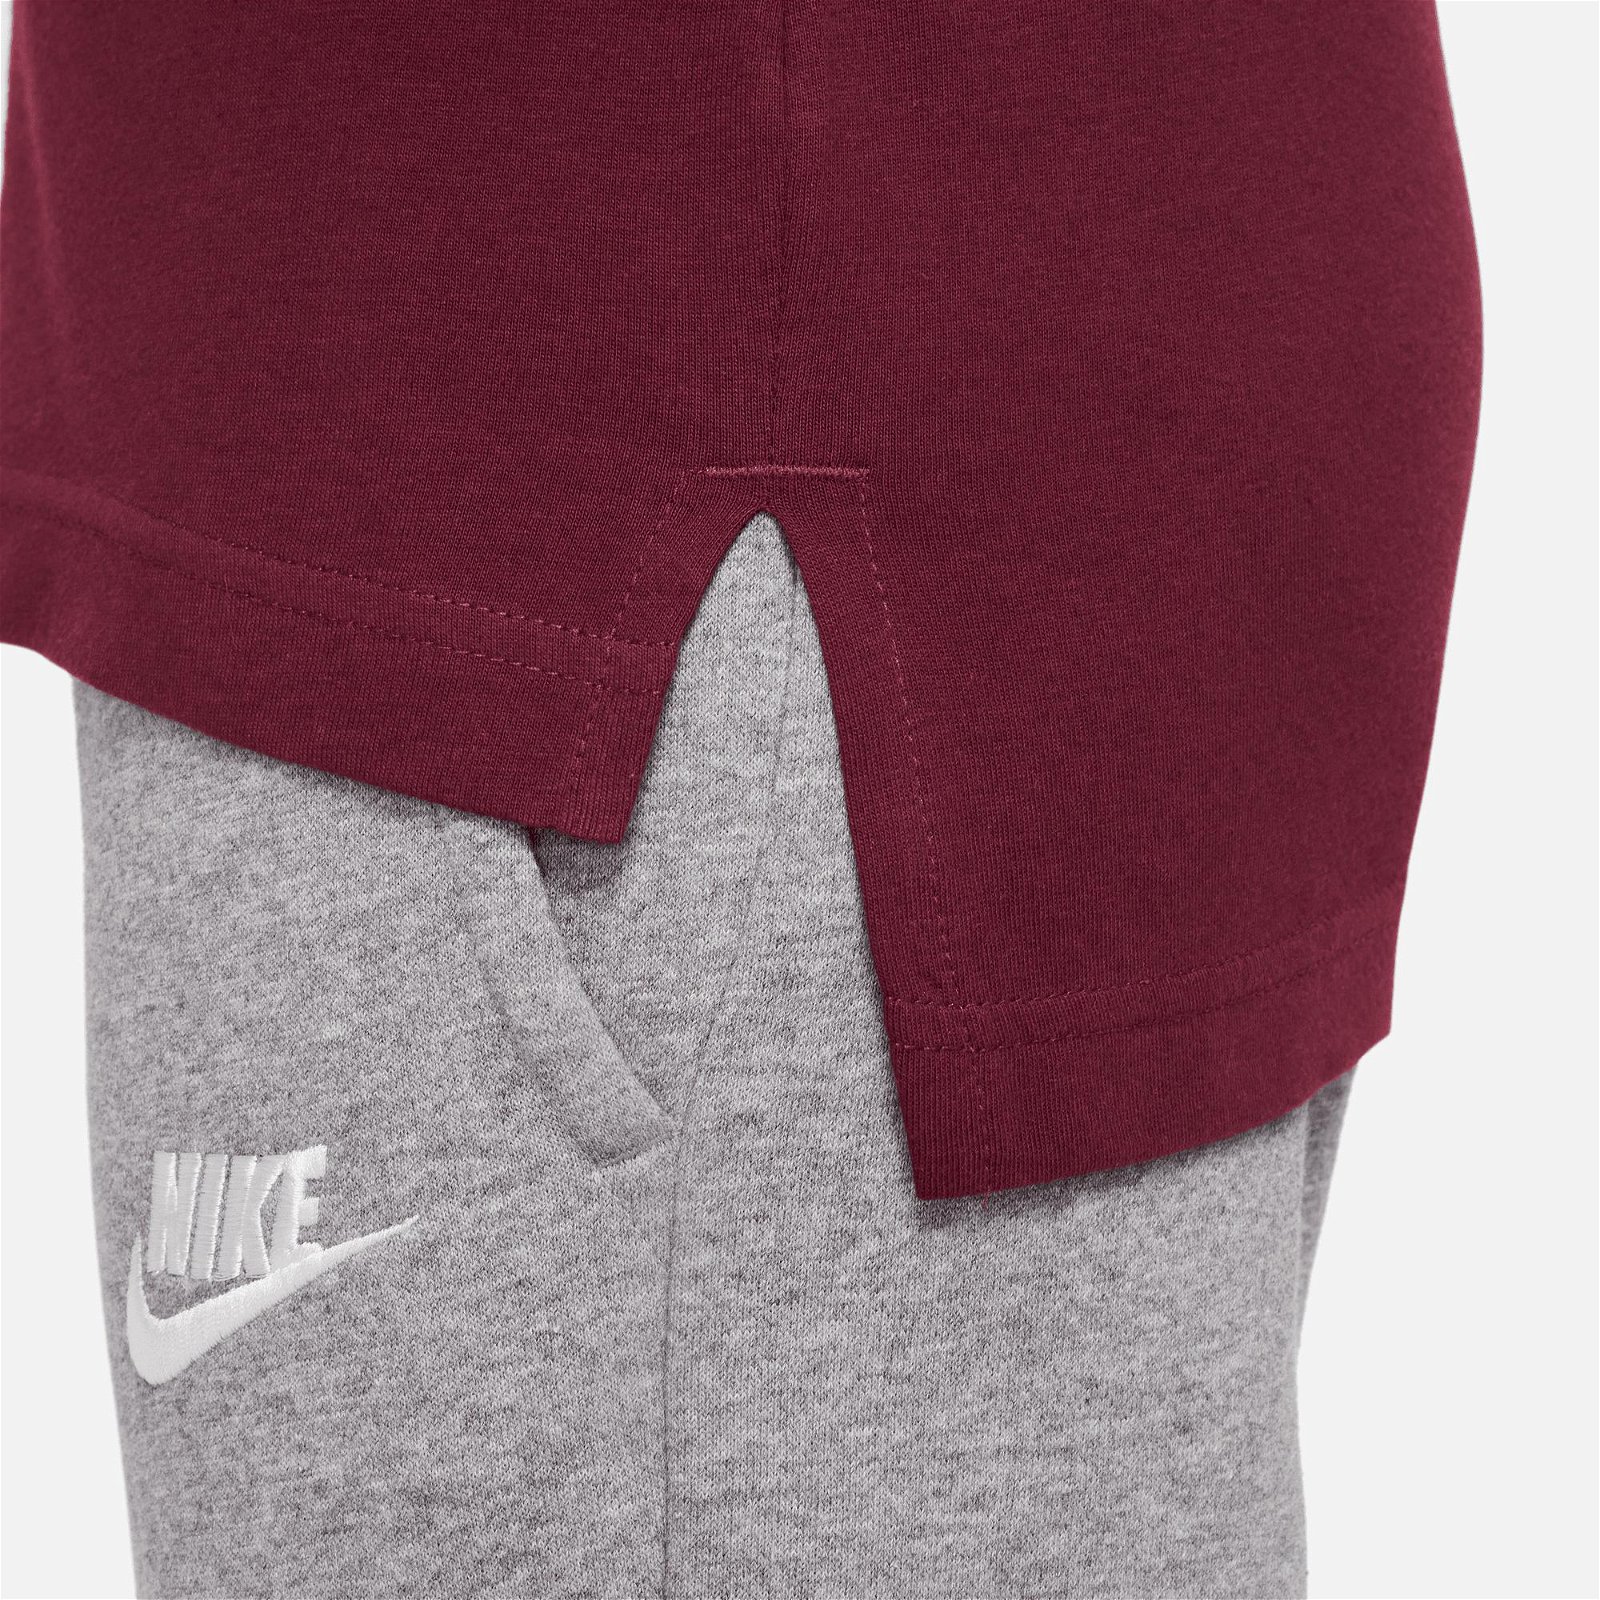 Nike Sportswear Basic Futura Çocuk Bordo T-Shirt